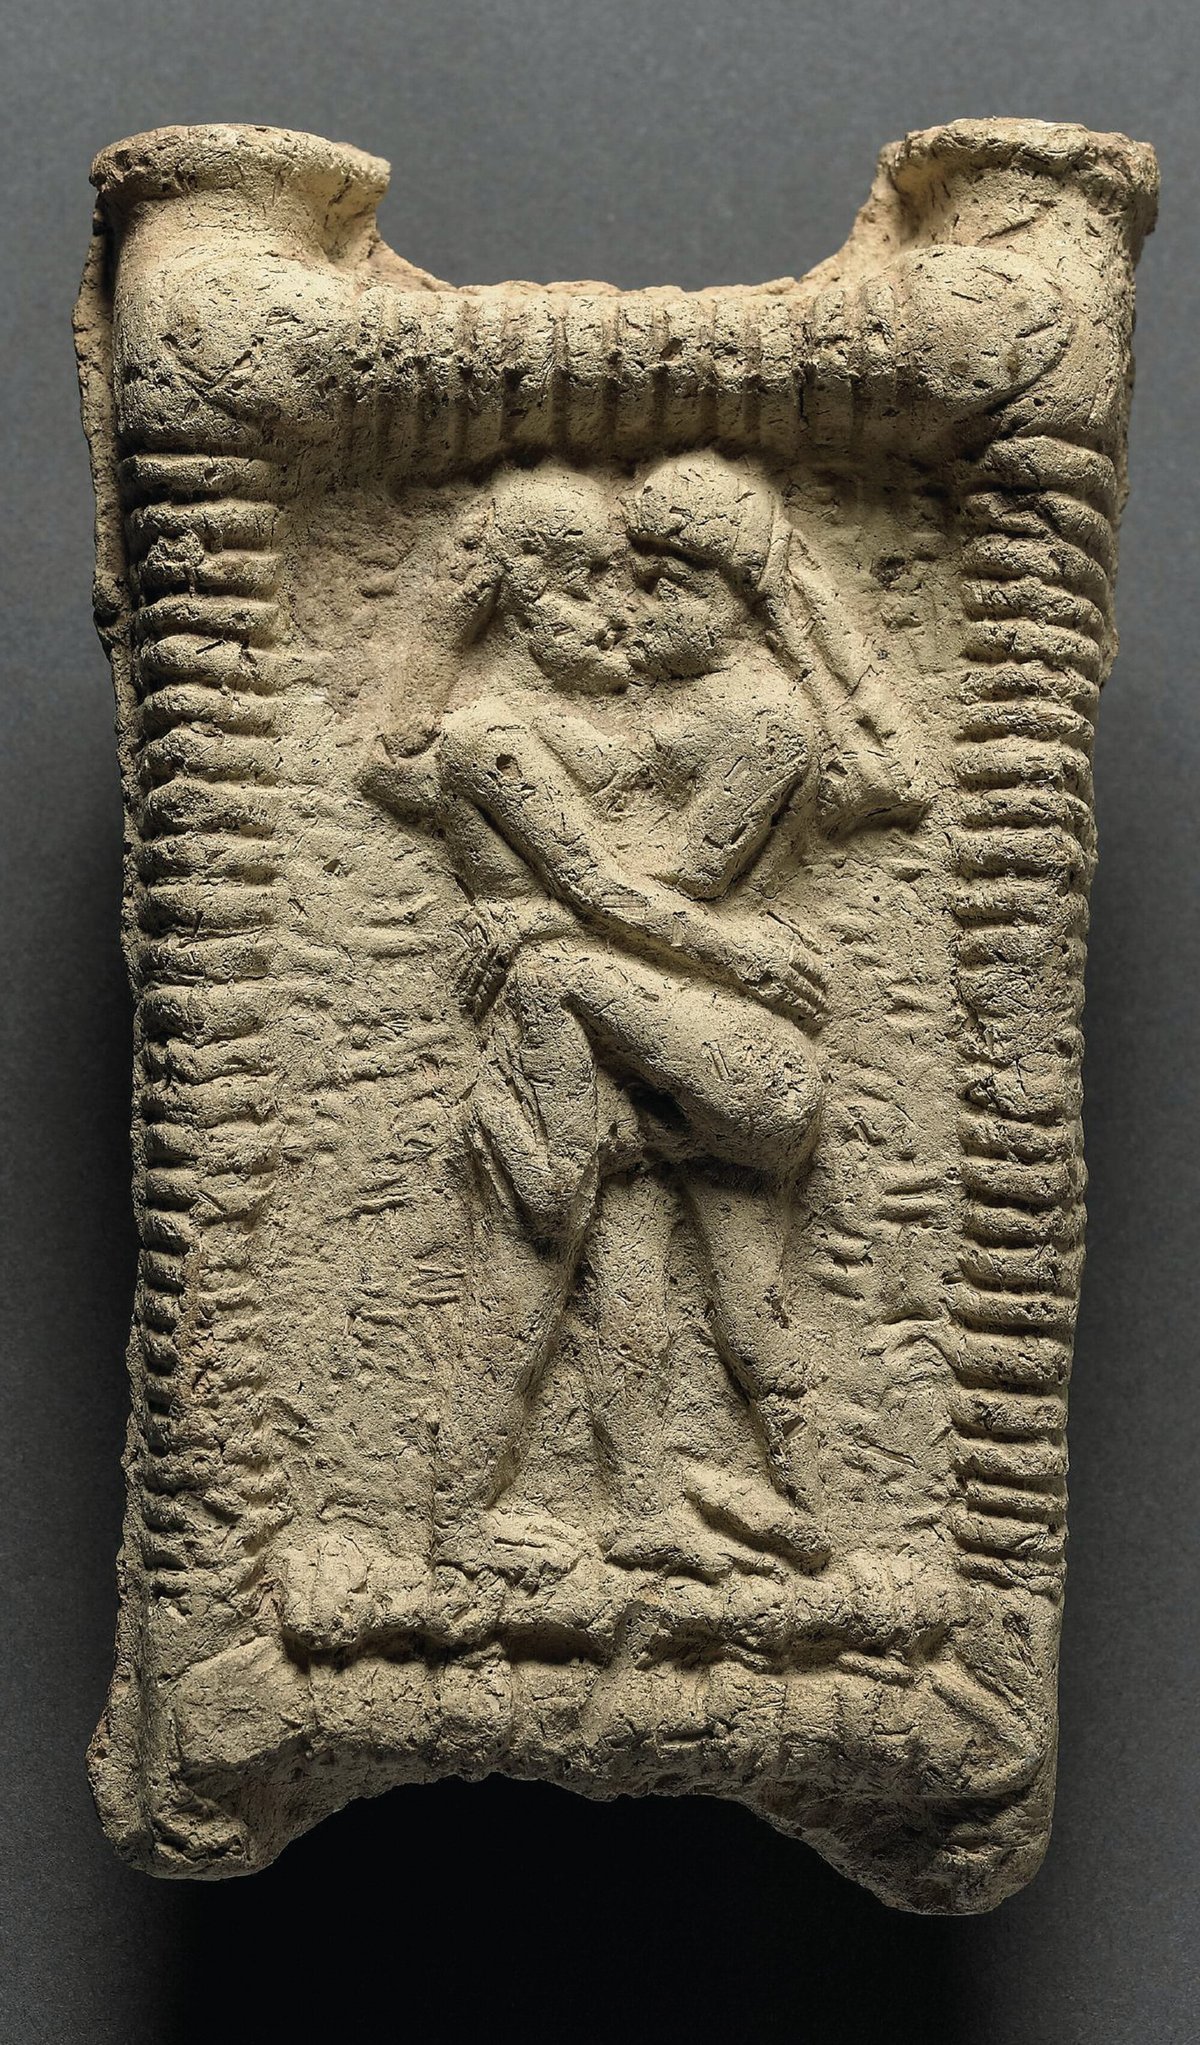 Argile de Mésopotamie, datée de ∼1800 avant notre ère © The British Museum